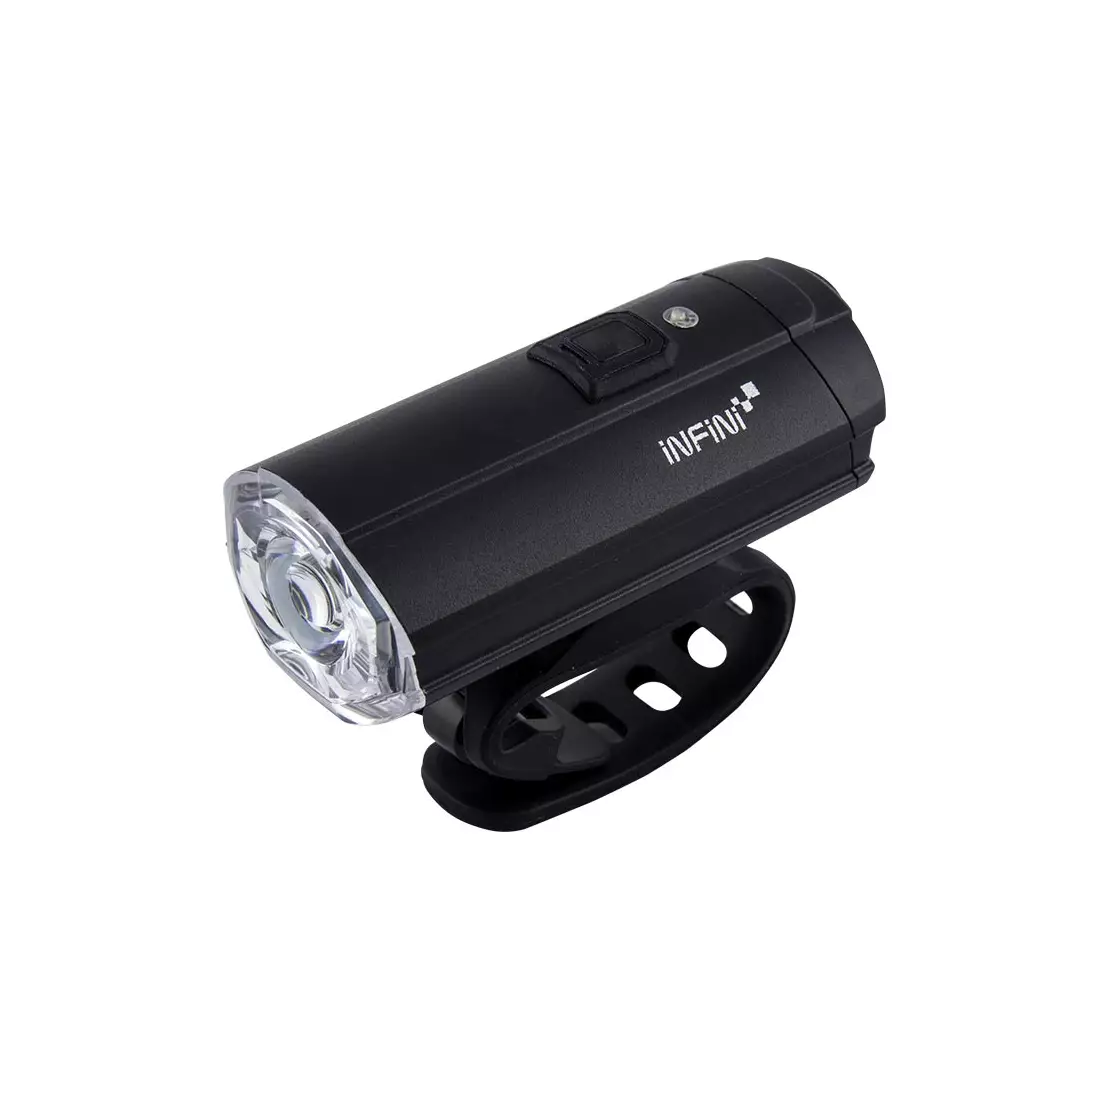 INFINI TRON 500 lumenów Black USB przednia lampka rowerowa I-282P-B